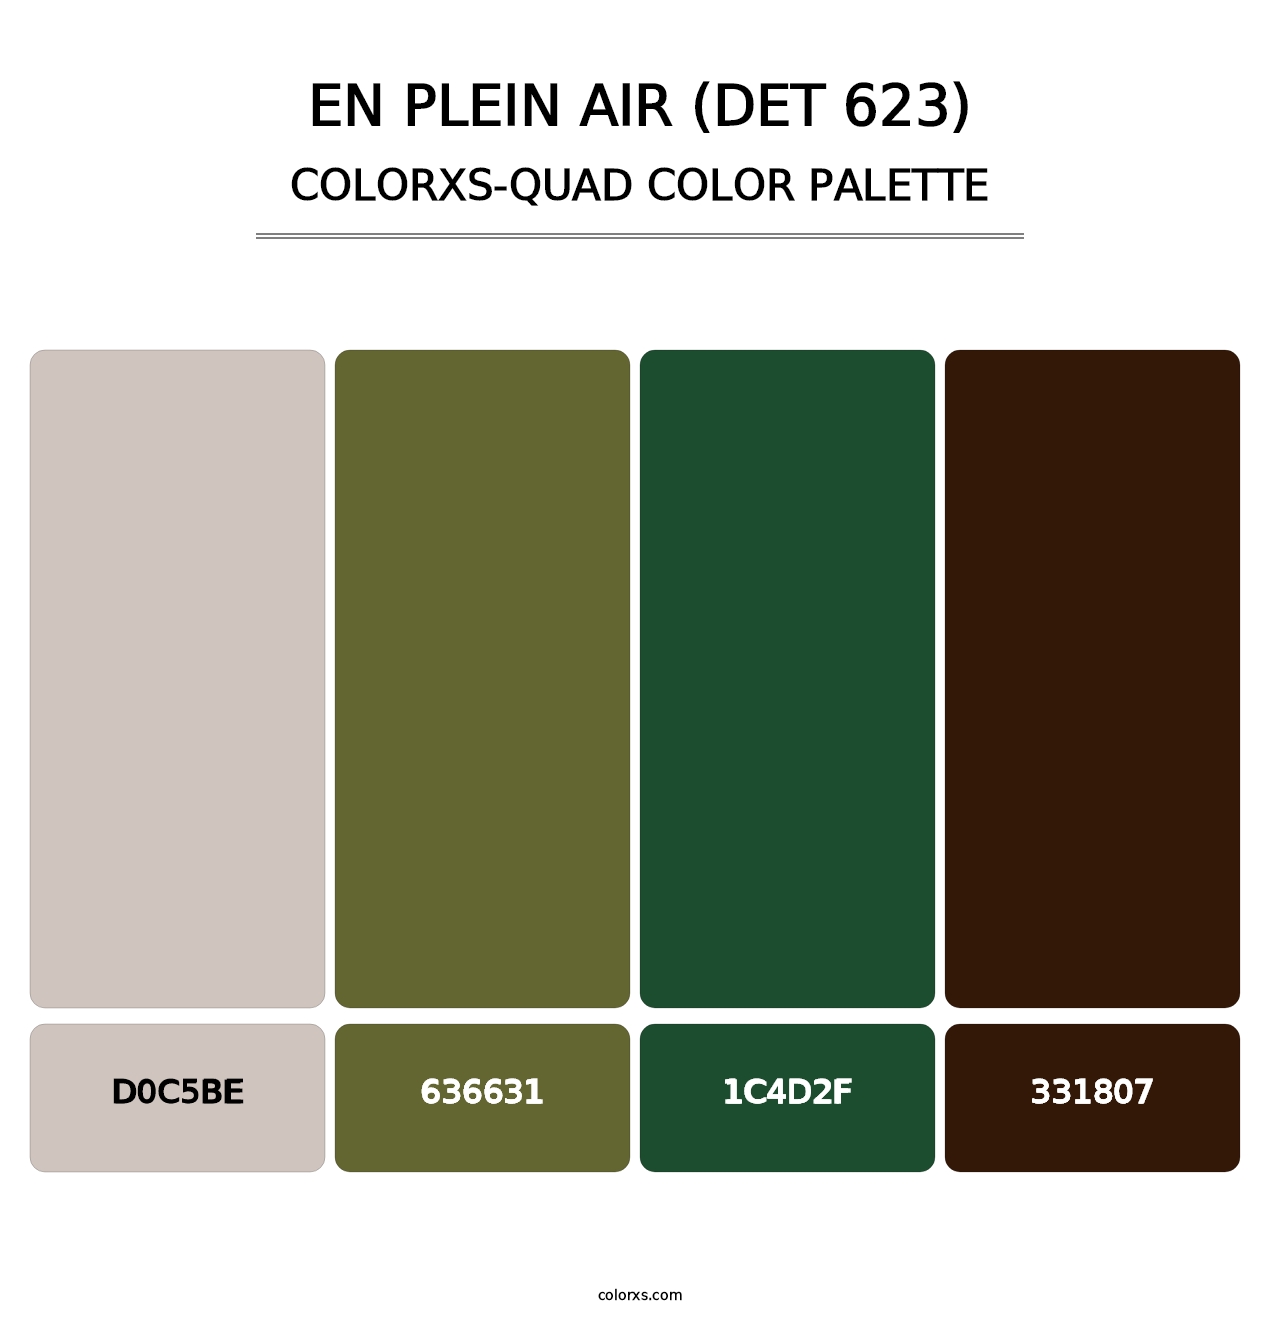 En Plein Air (DET 623) - Colorxs Quad Palette